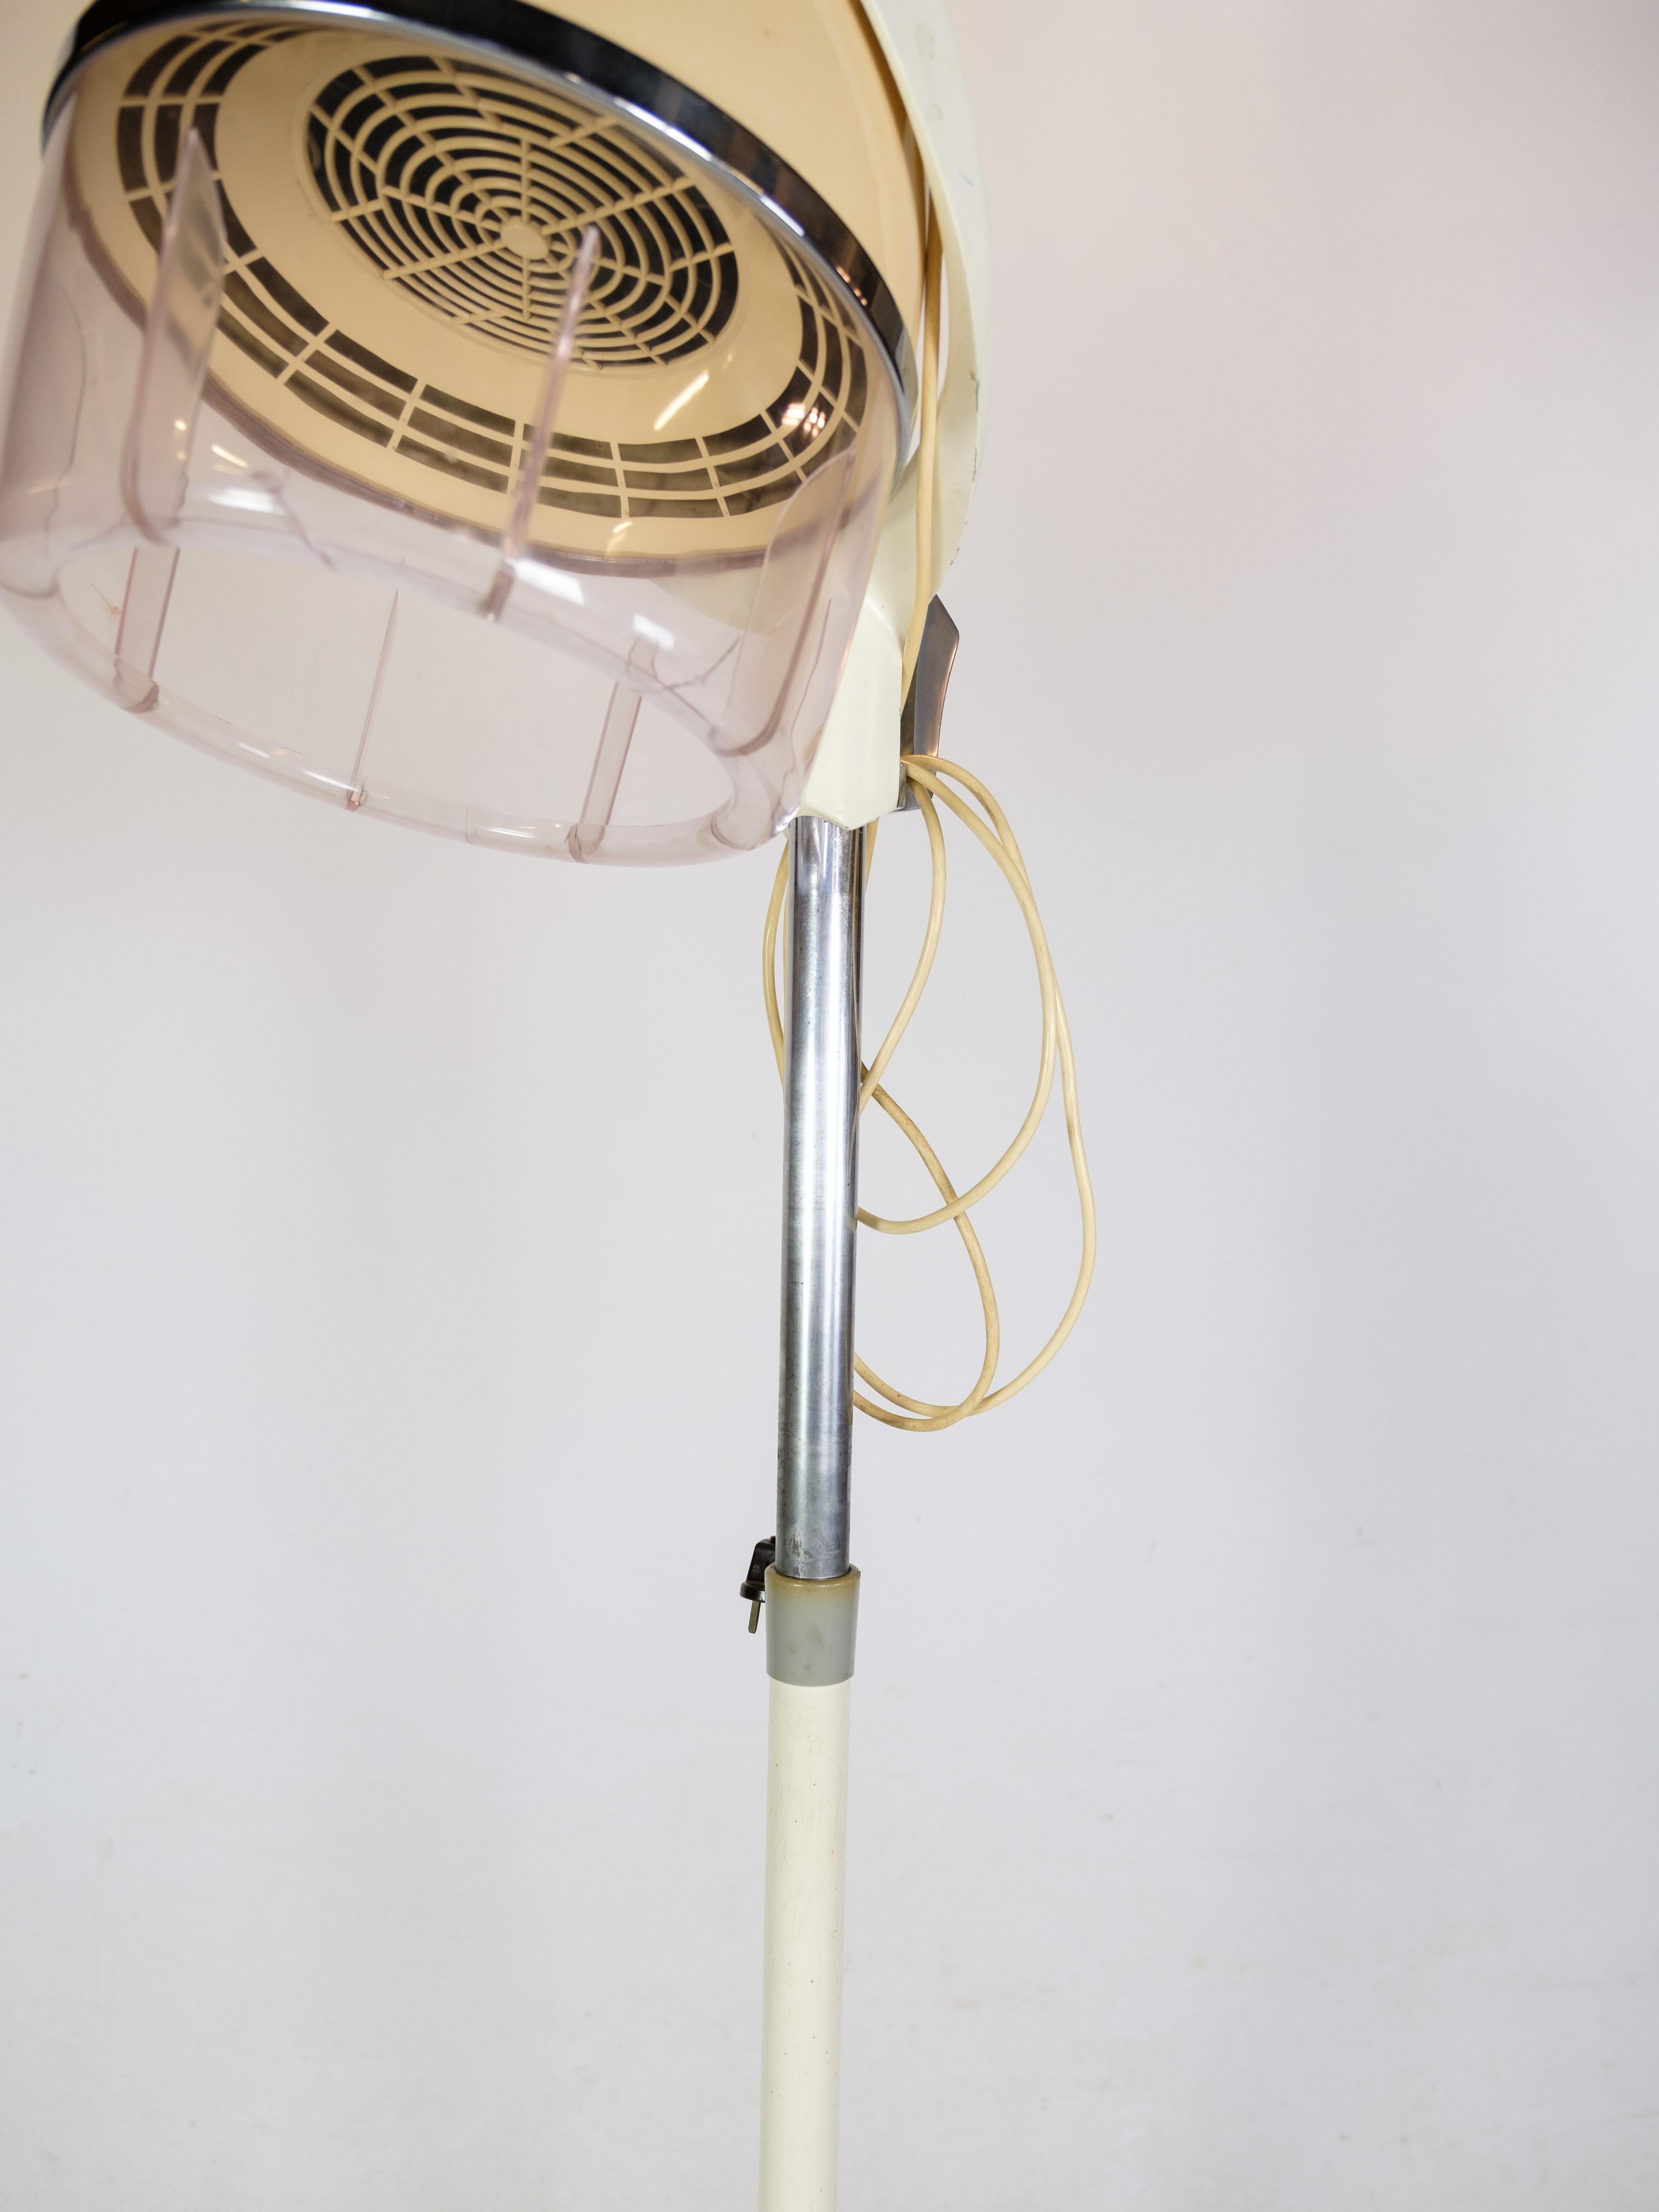 Ancien casque de séchage rétro sur un support à roulettes, modèle Impérial de la période des années 1950.
Mesures en cm : H:168